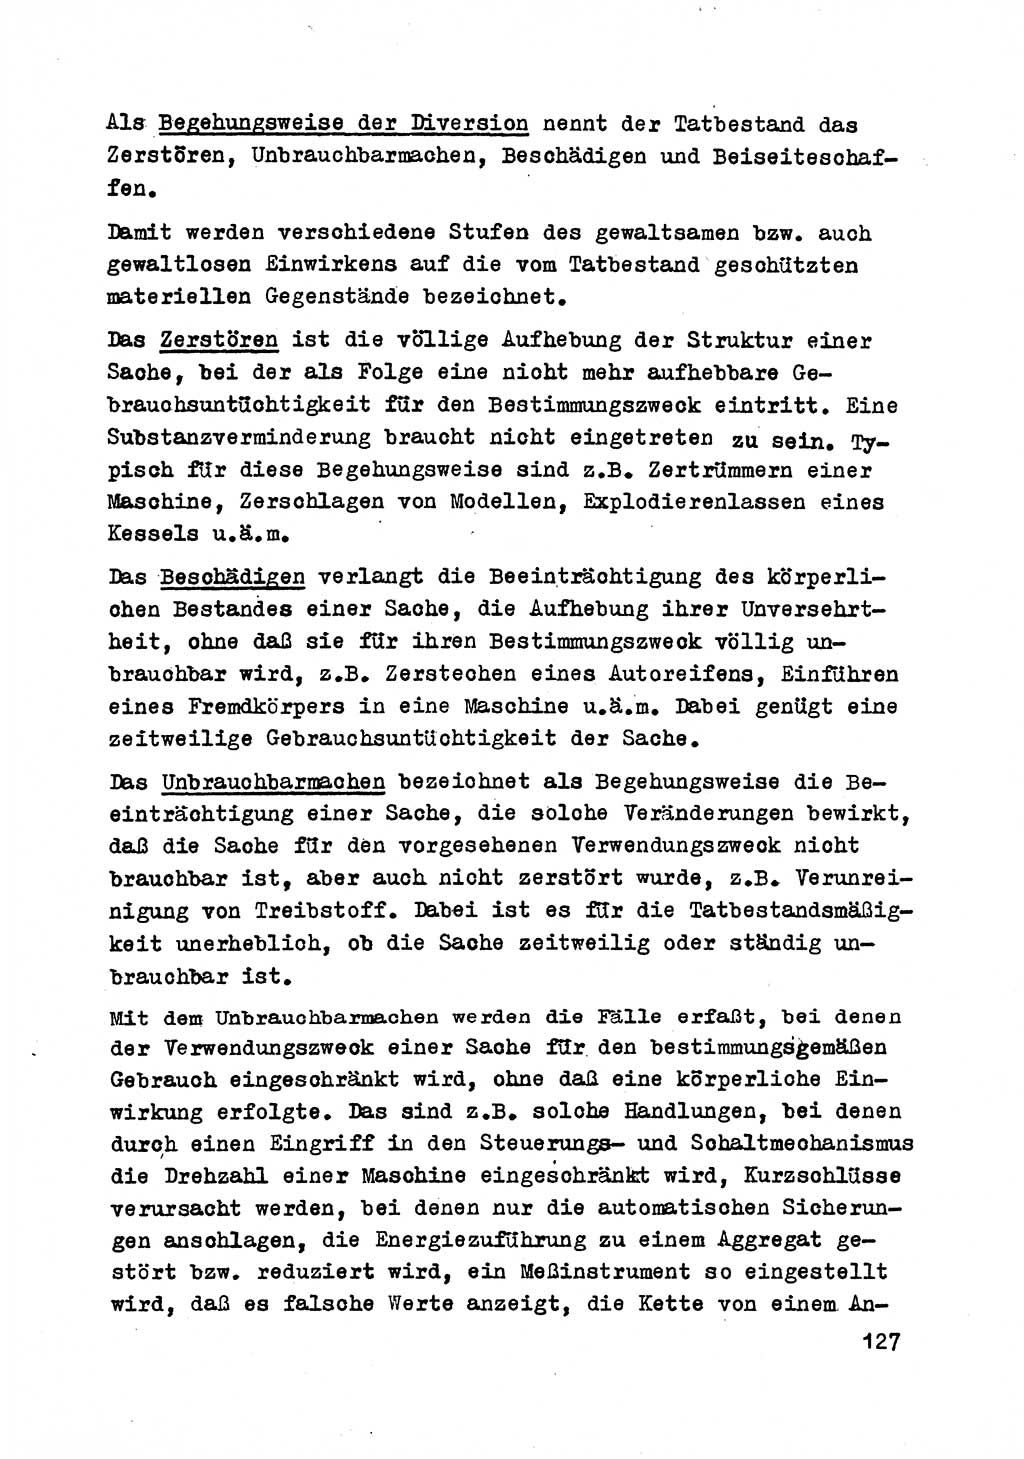 Strafrecht der DDR (Deutsche Demokratische Republik), Besonderer Teil, Lehrmaterial, Heft 2 1969, Seite 127 (Strafr. DDR BT Lehrmat. H. 2 1969, S. 127)